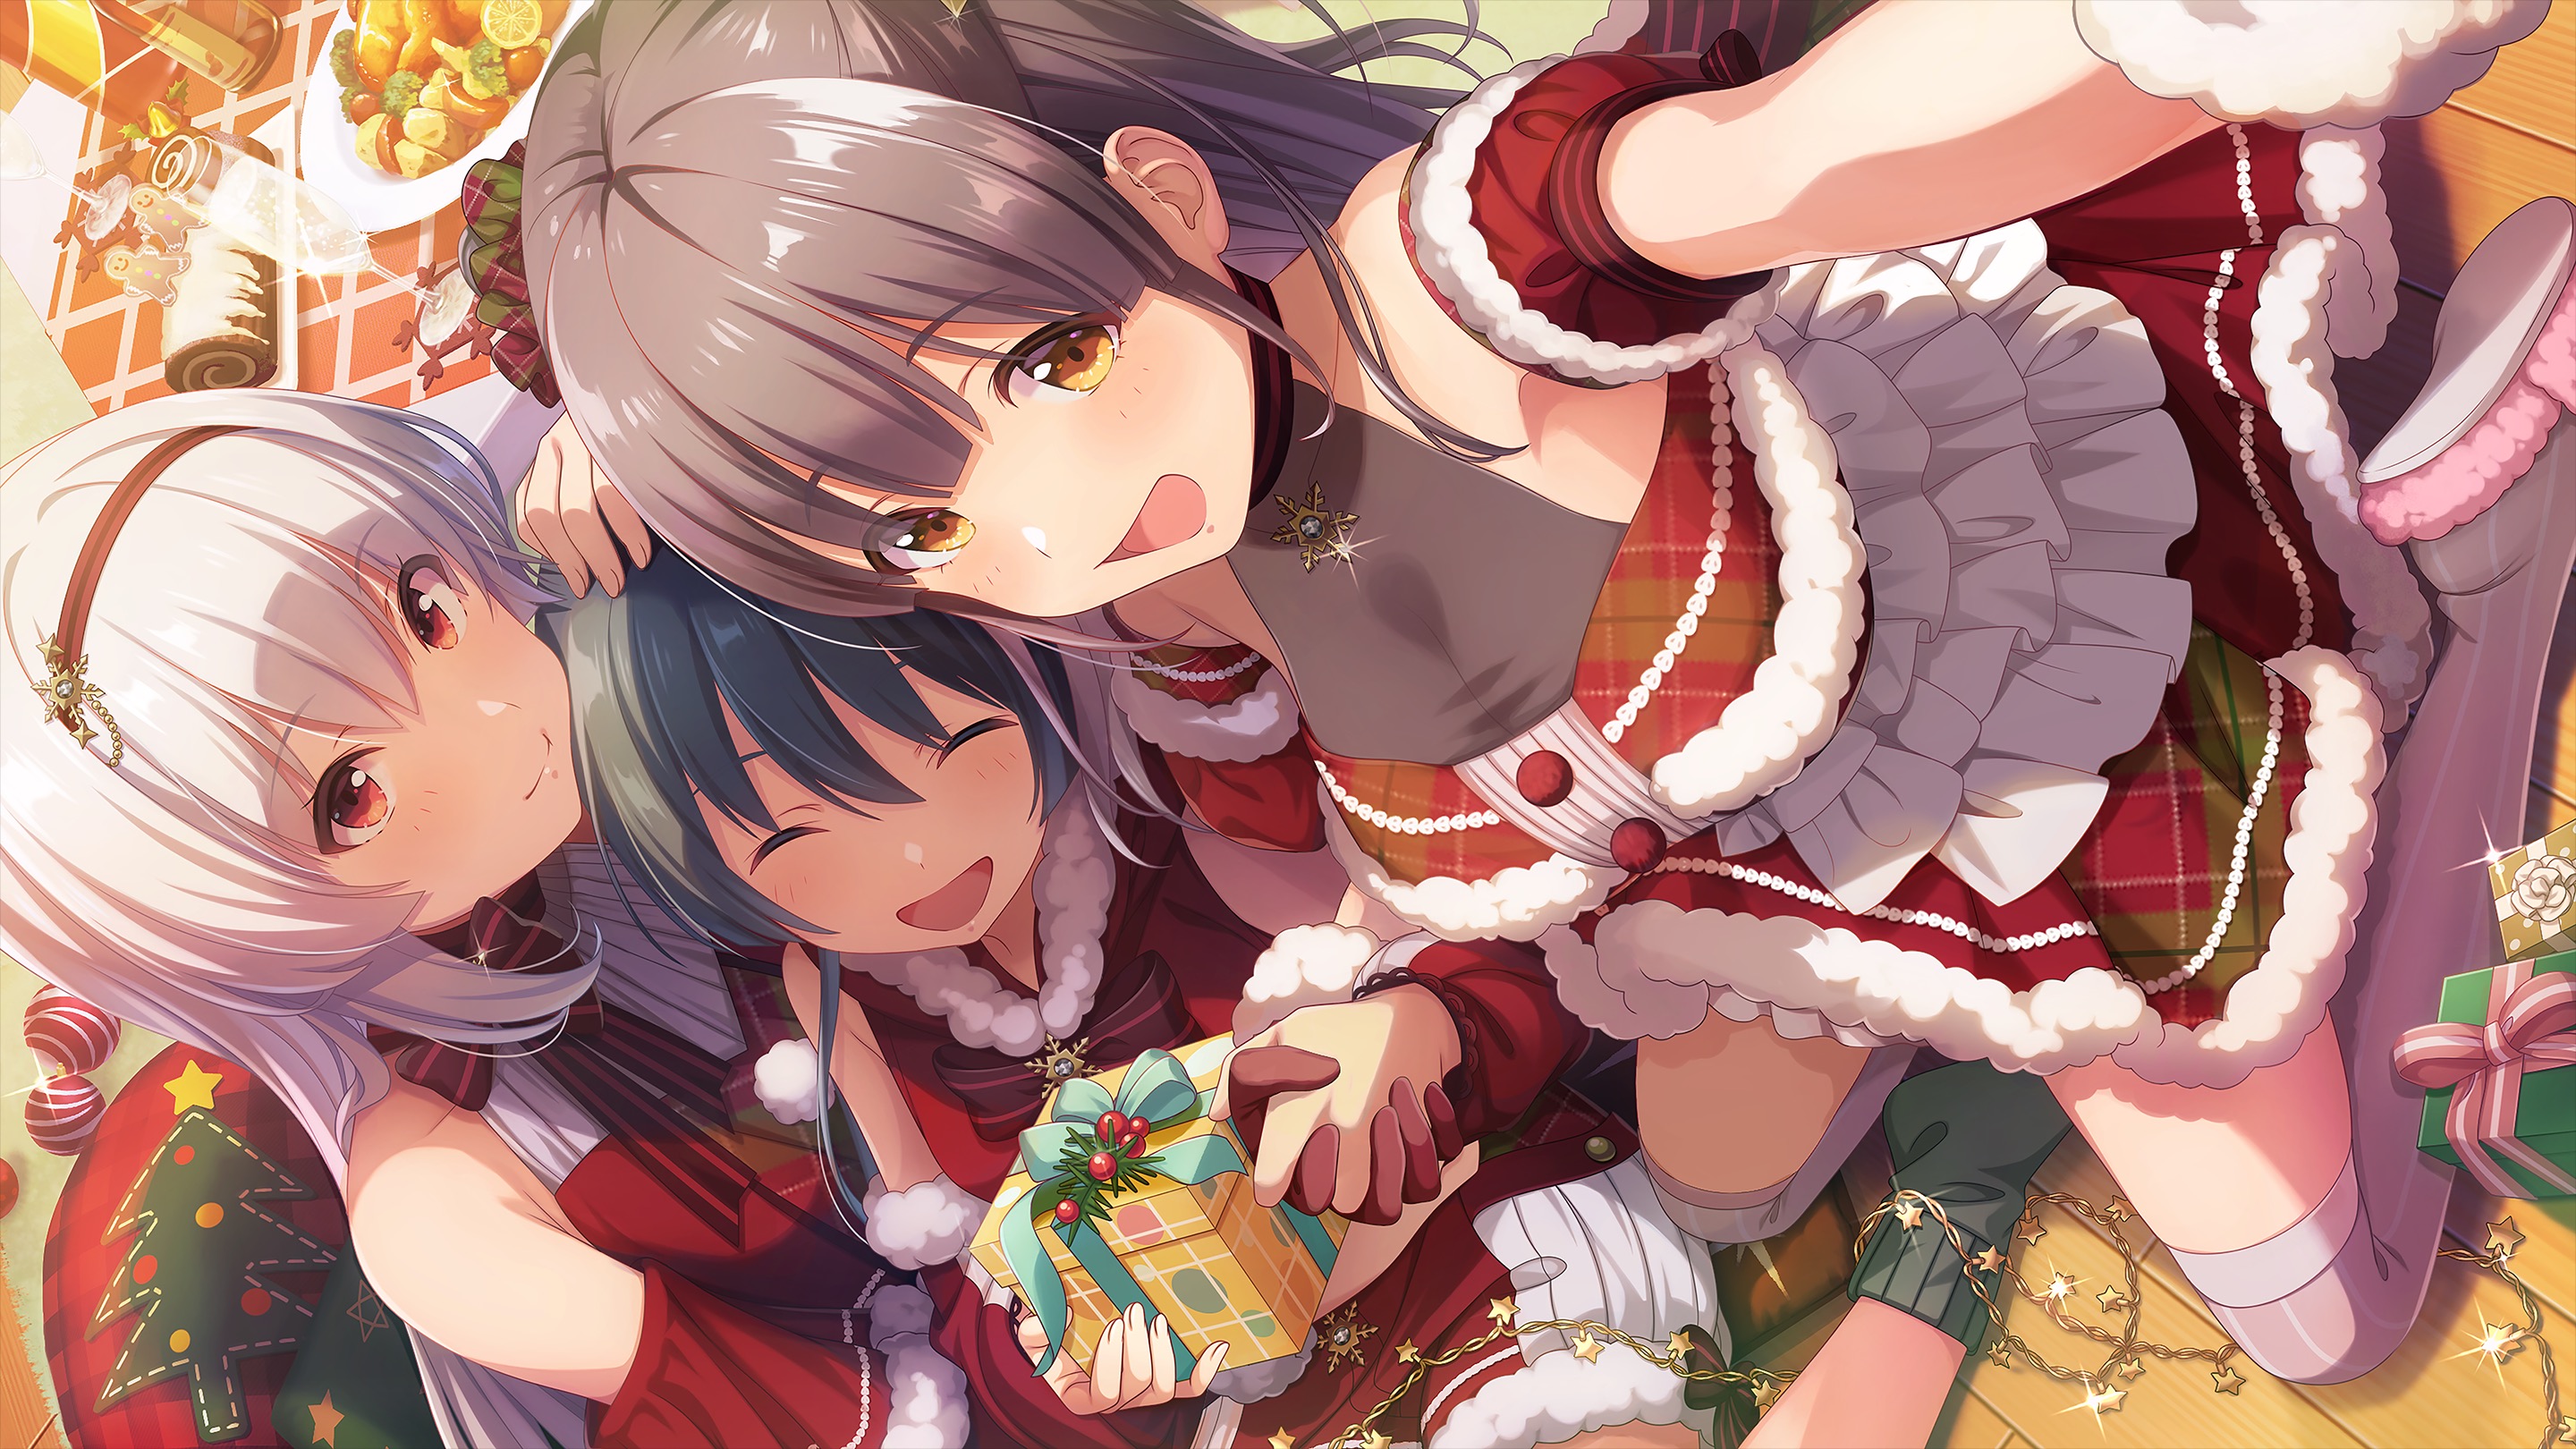 Anime Anime Girls Sakura Koharu Artwork Idoly Pride Christmas Selfies 2880x1620